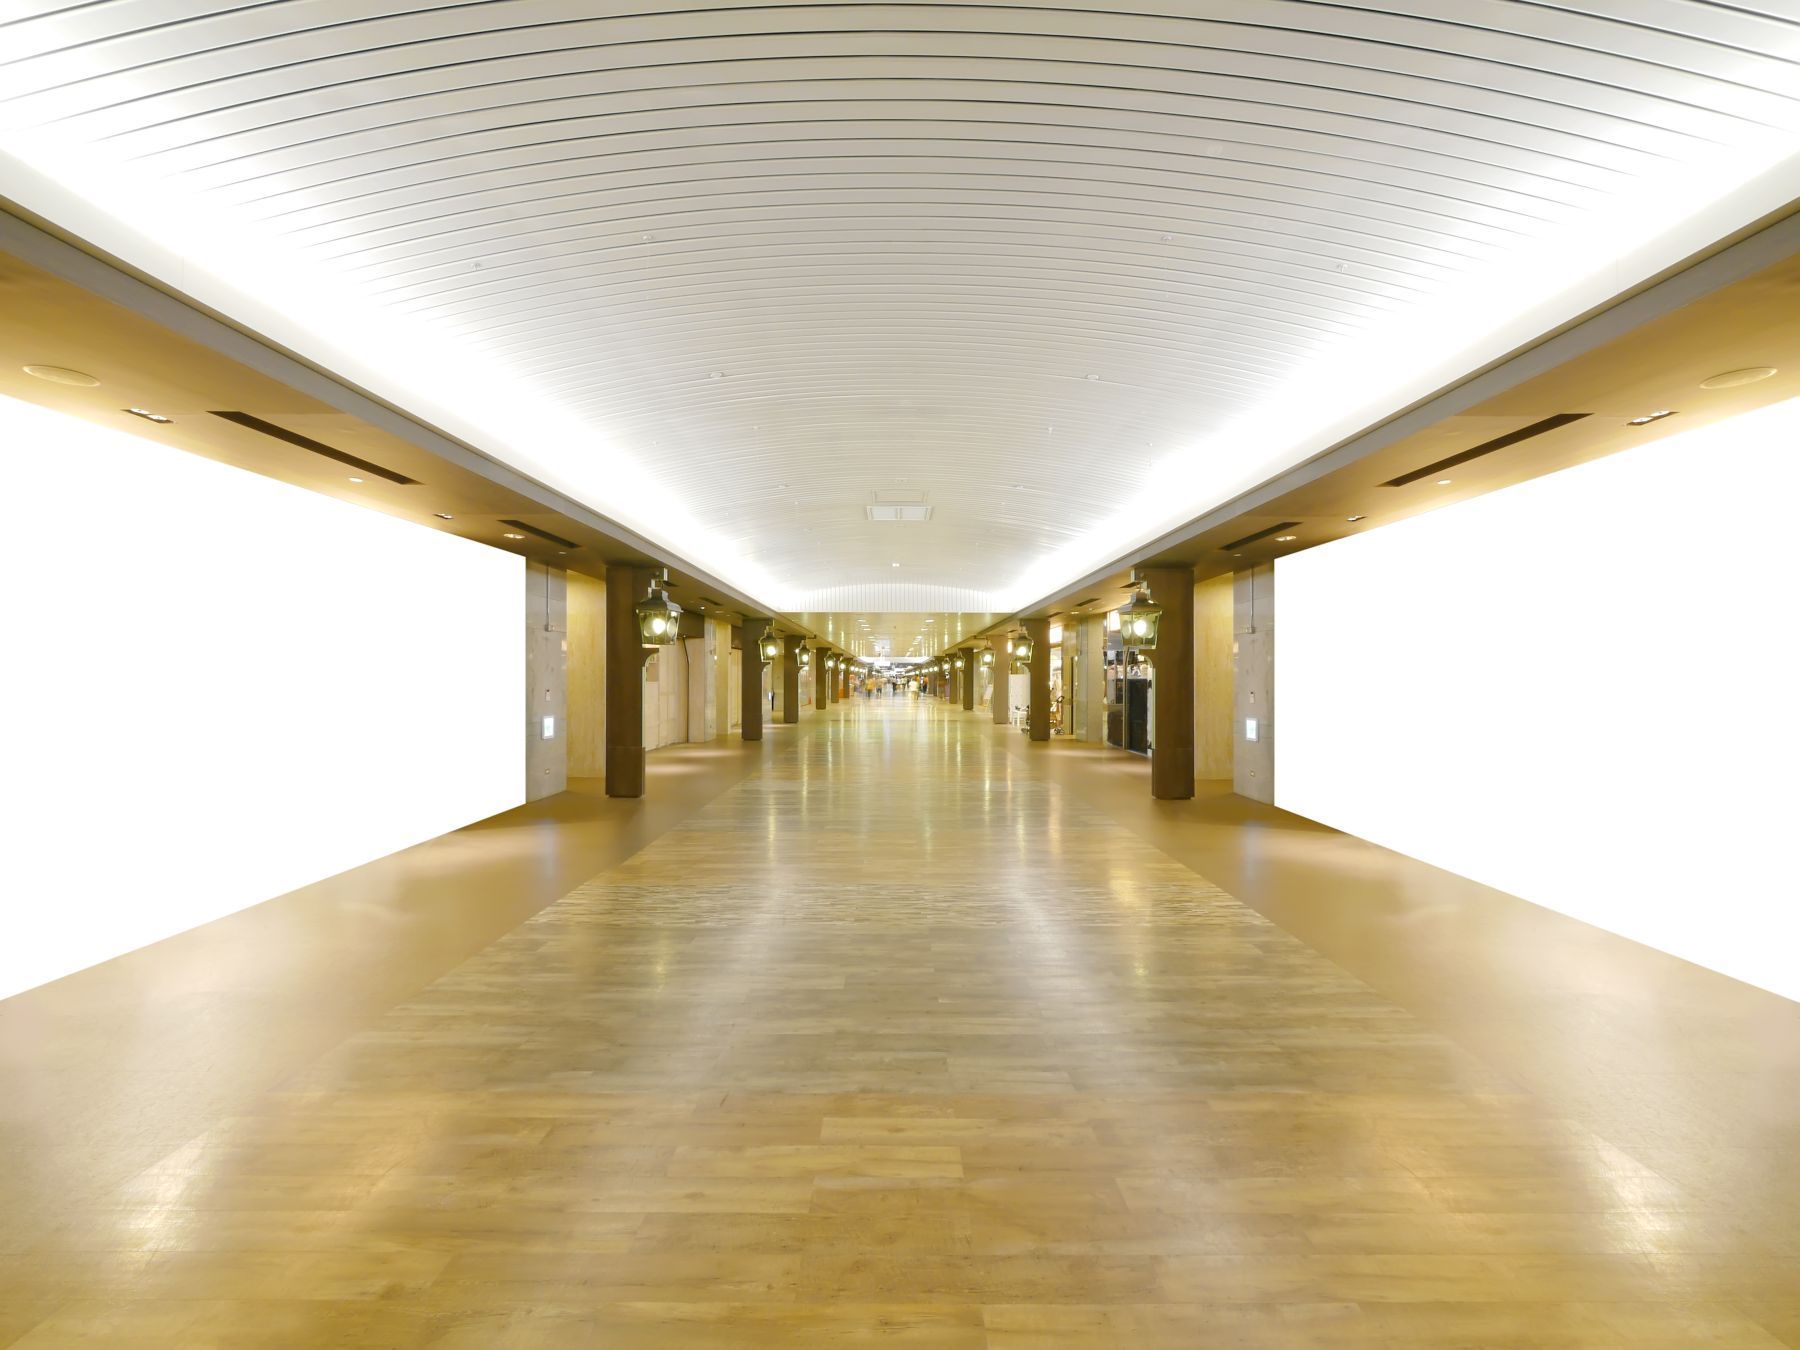 long wooden walkway underground